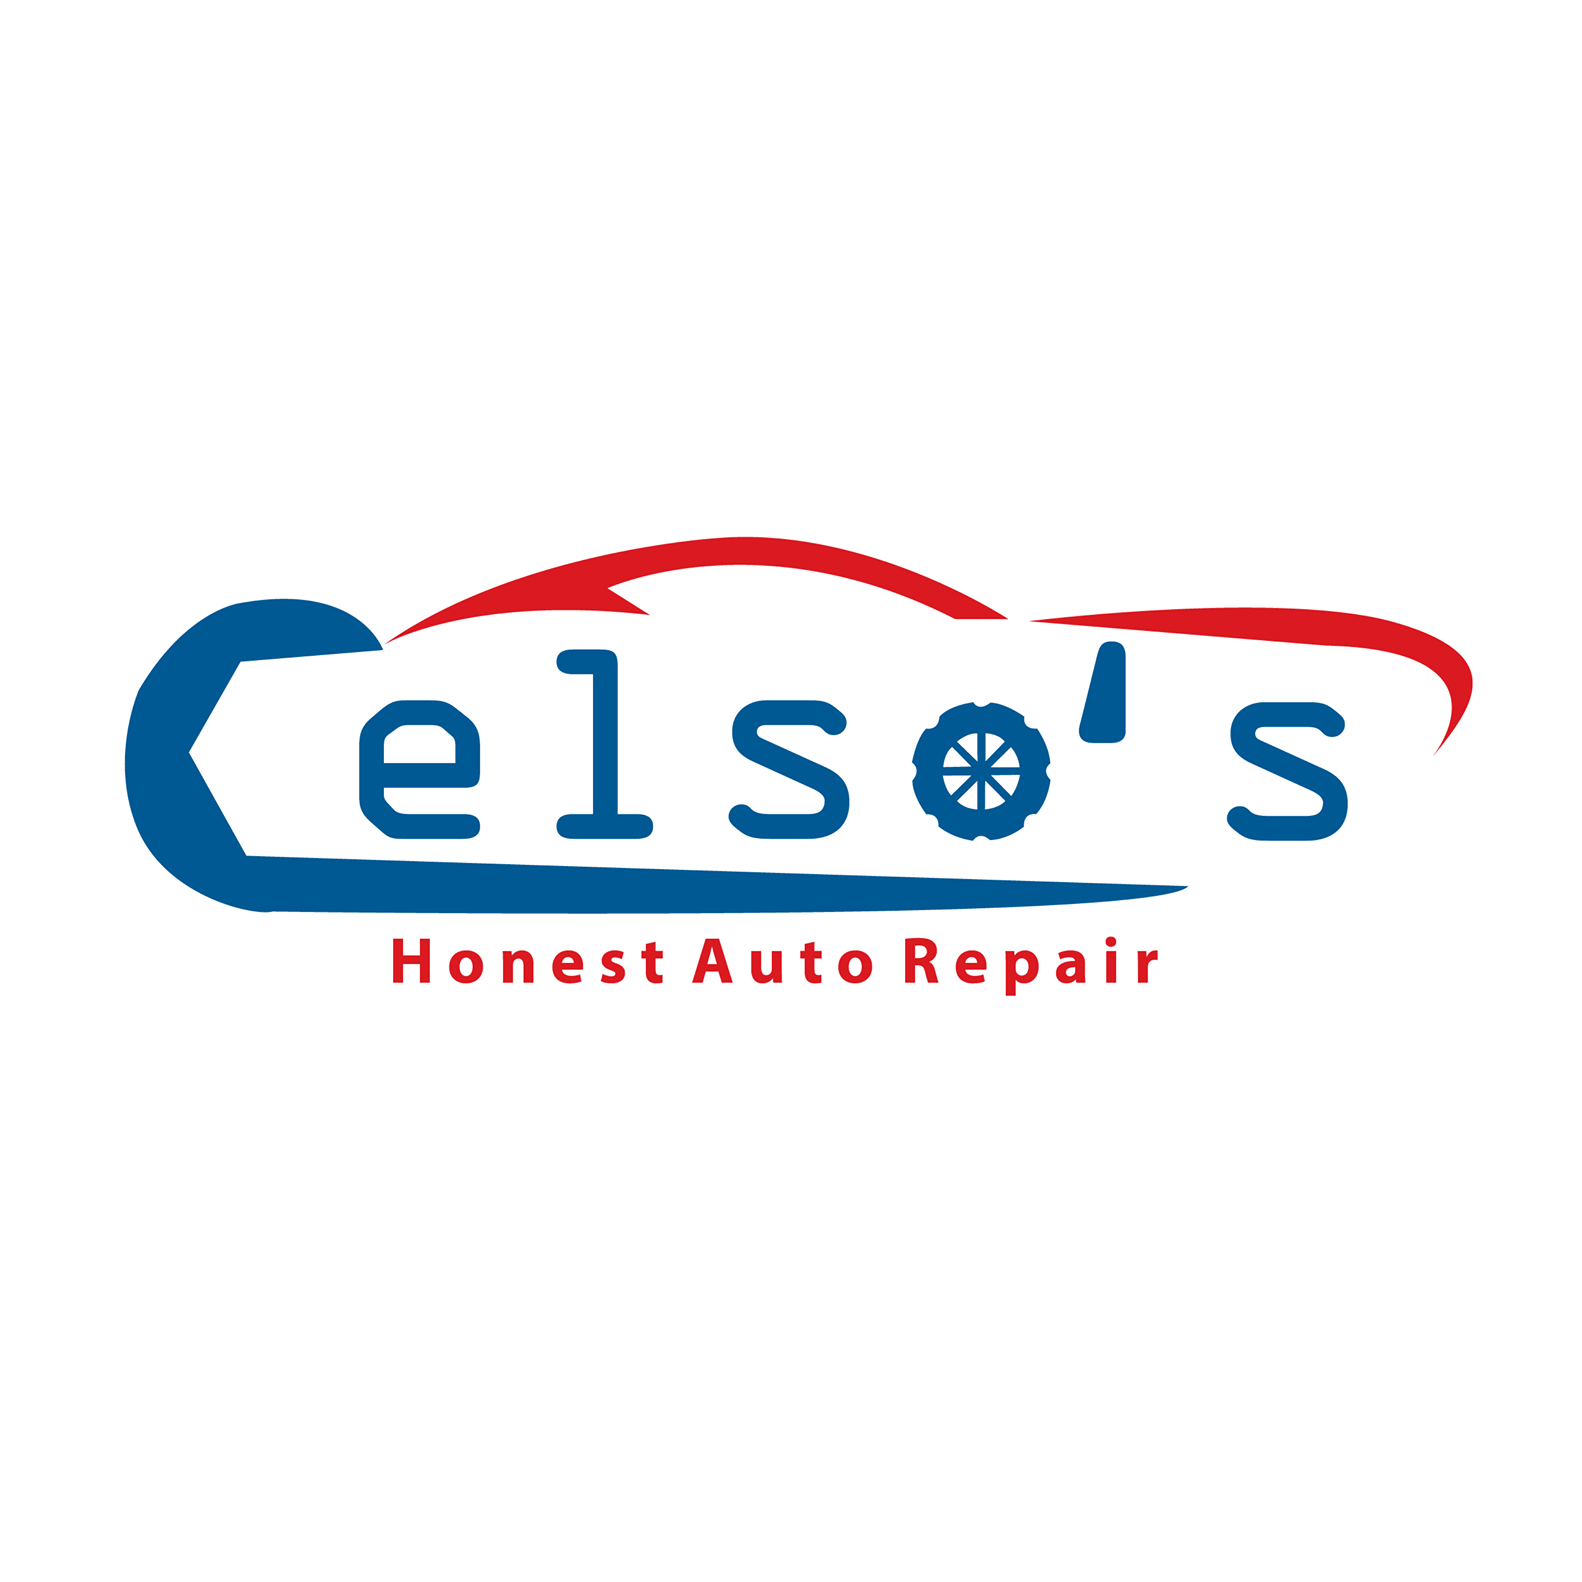 Celso's Honest Auto Repair